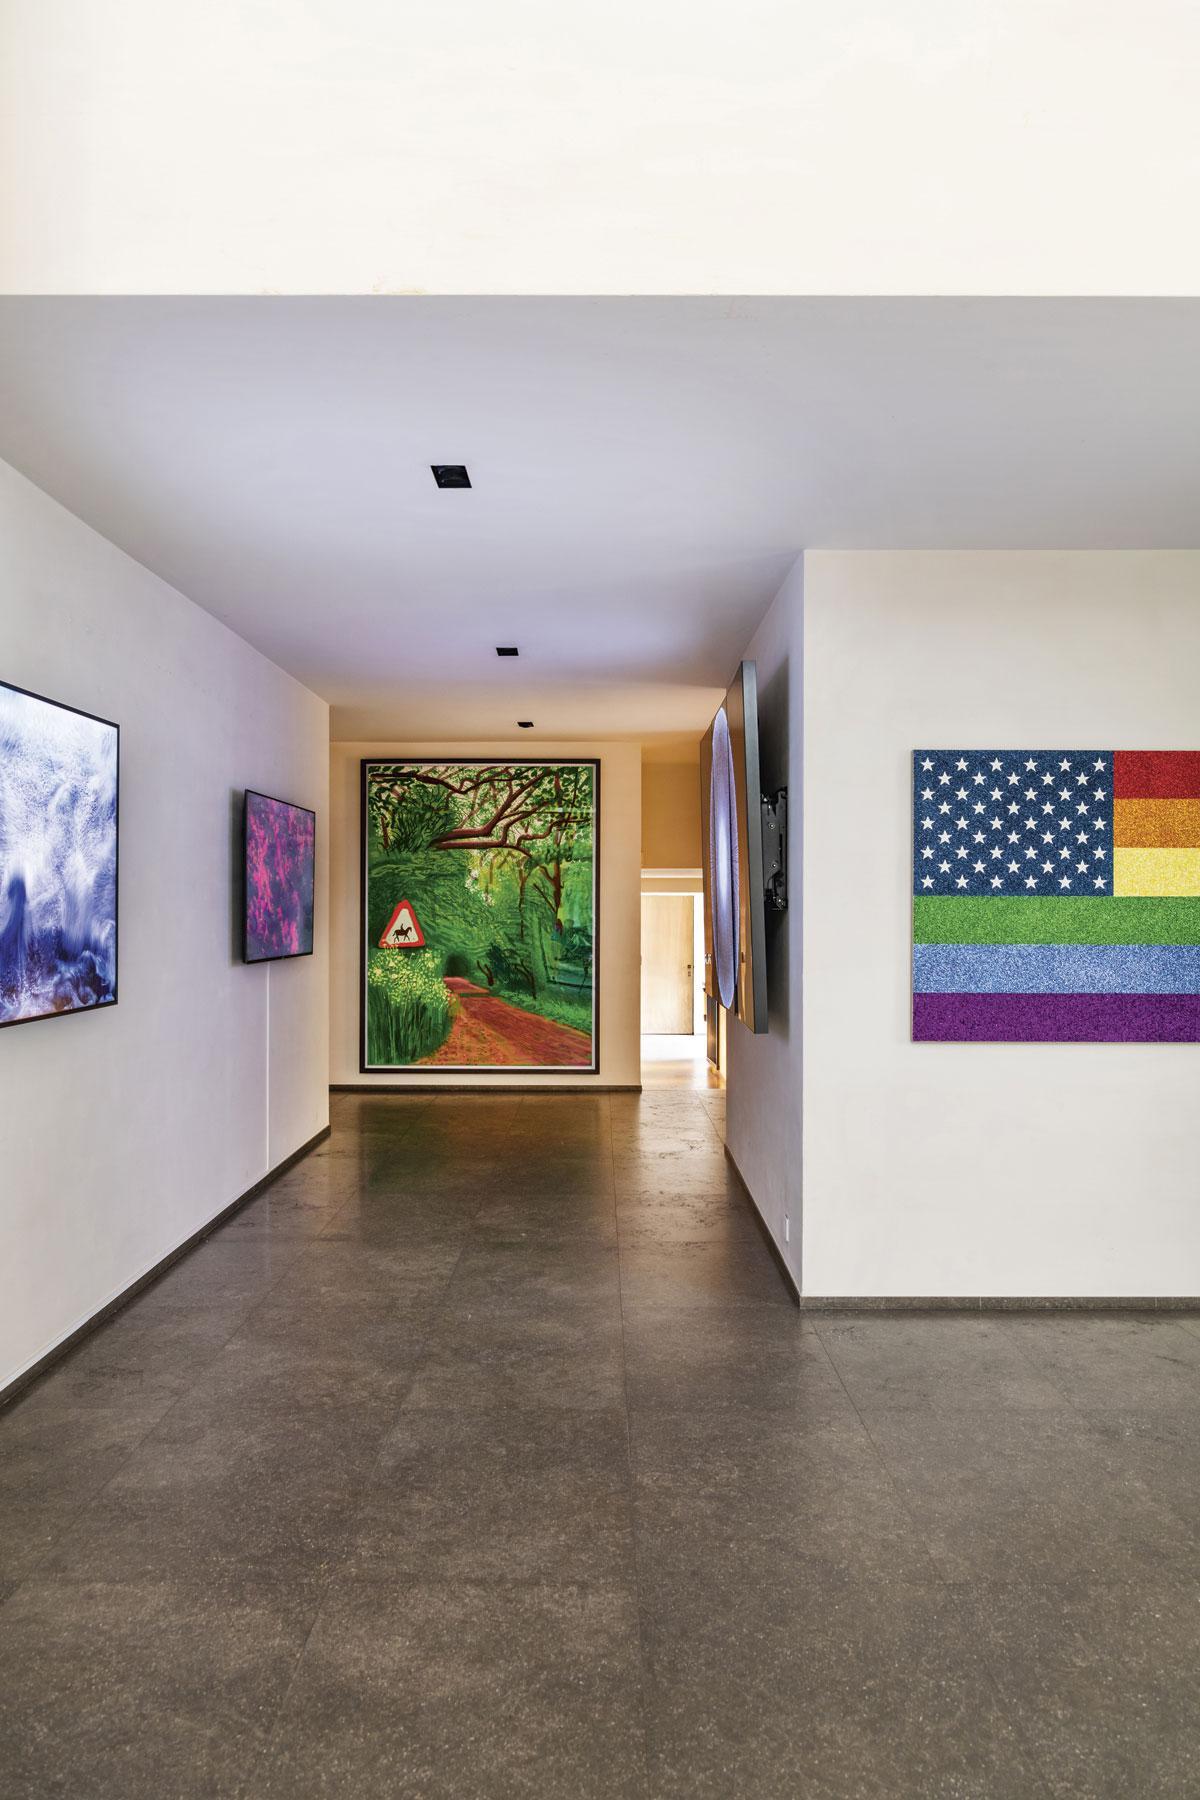 In de hal komen diverse kunstvormen aan bod, o.a. Rainbow American Flag (rechts) van Jonathan Horowitz, Jardins D’été van Davide Quayola (links achteraan) en het werk Machine Hallucination van Refik Anadol (vooraan links).